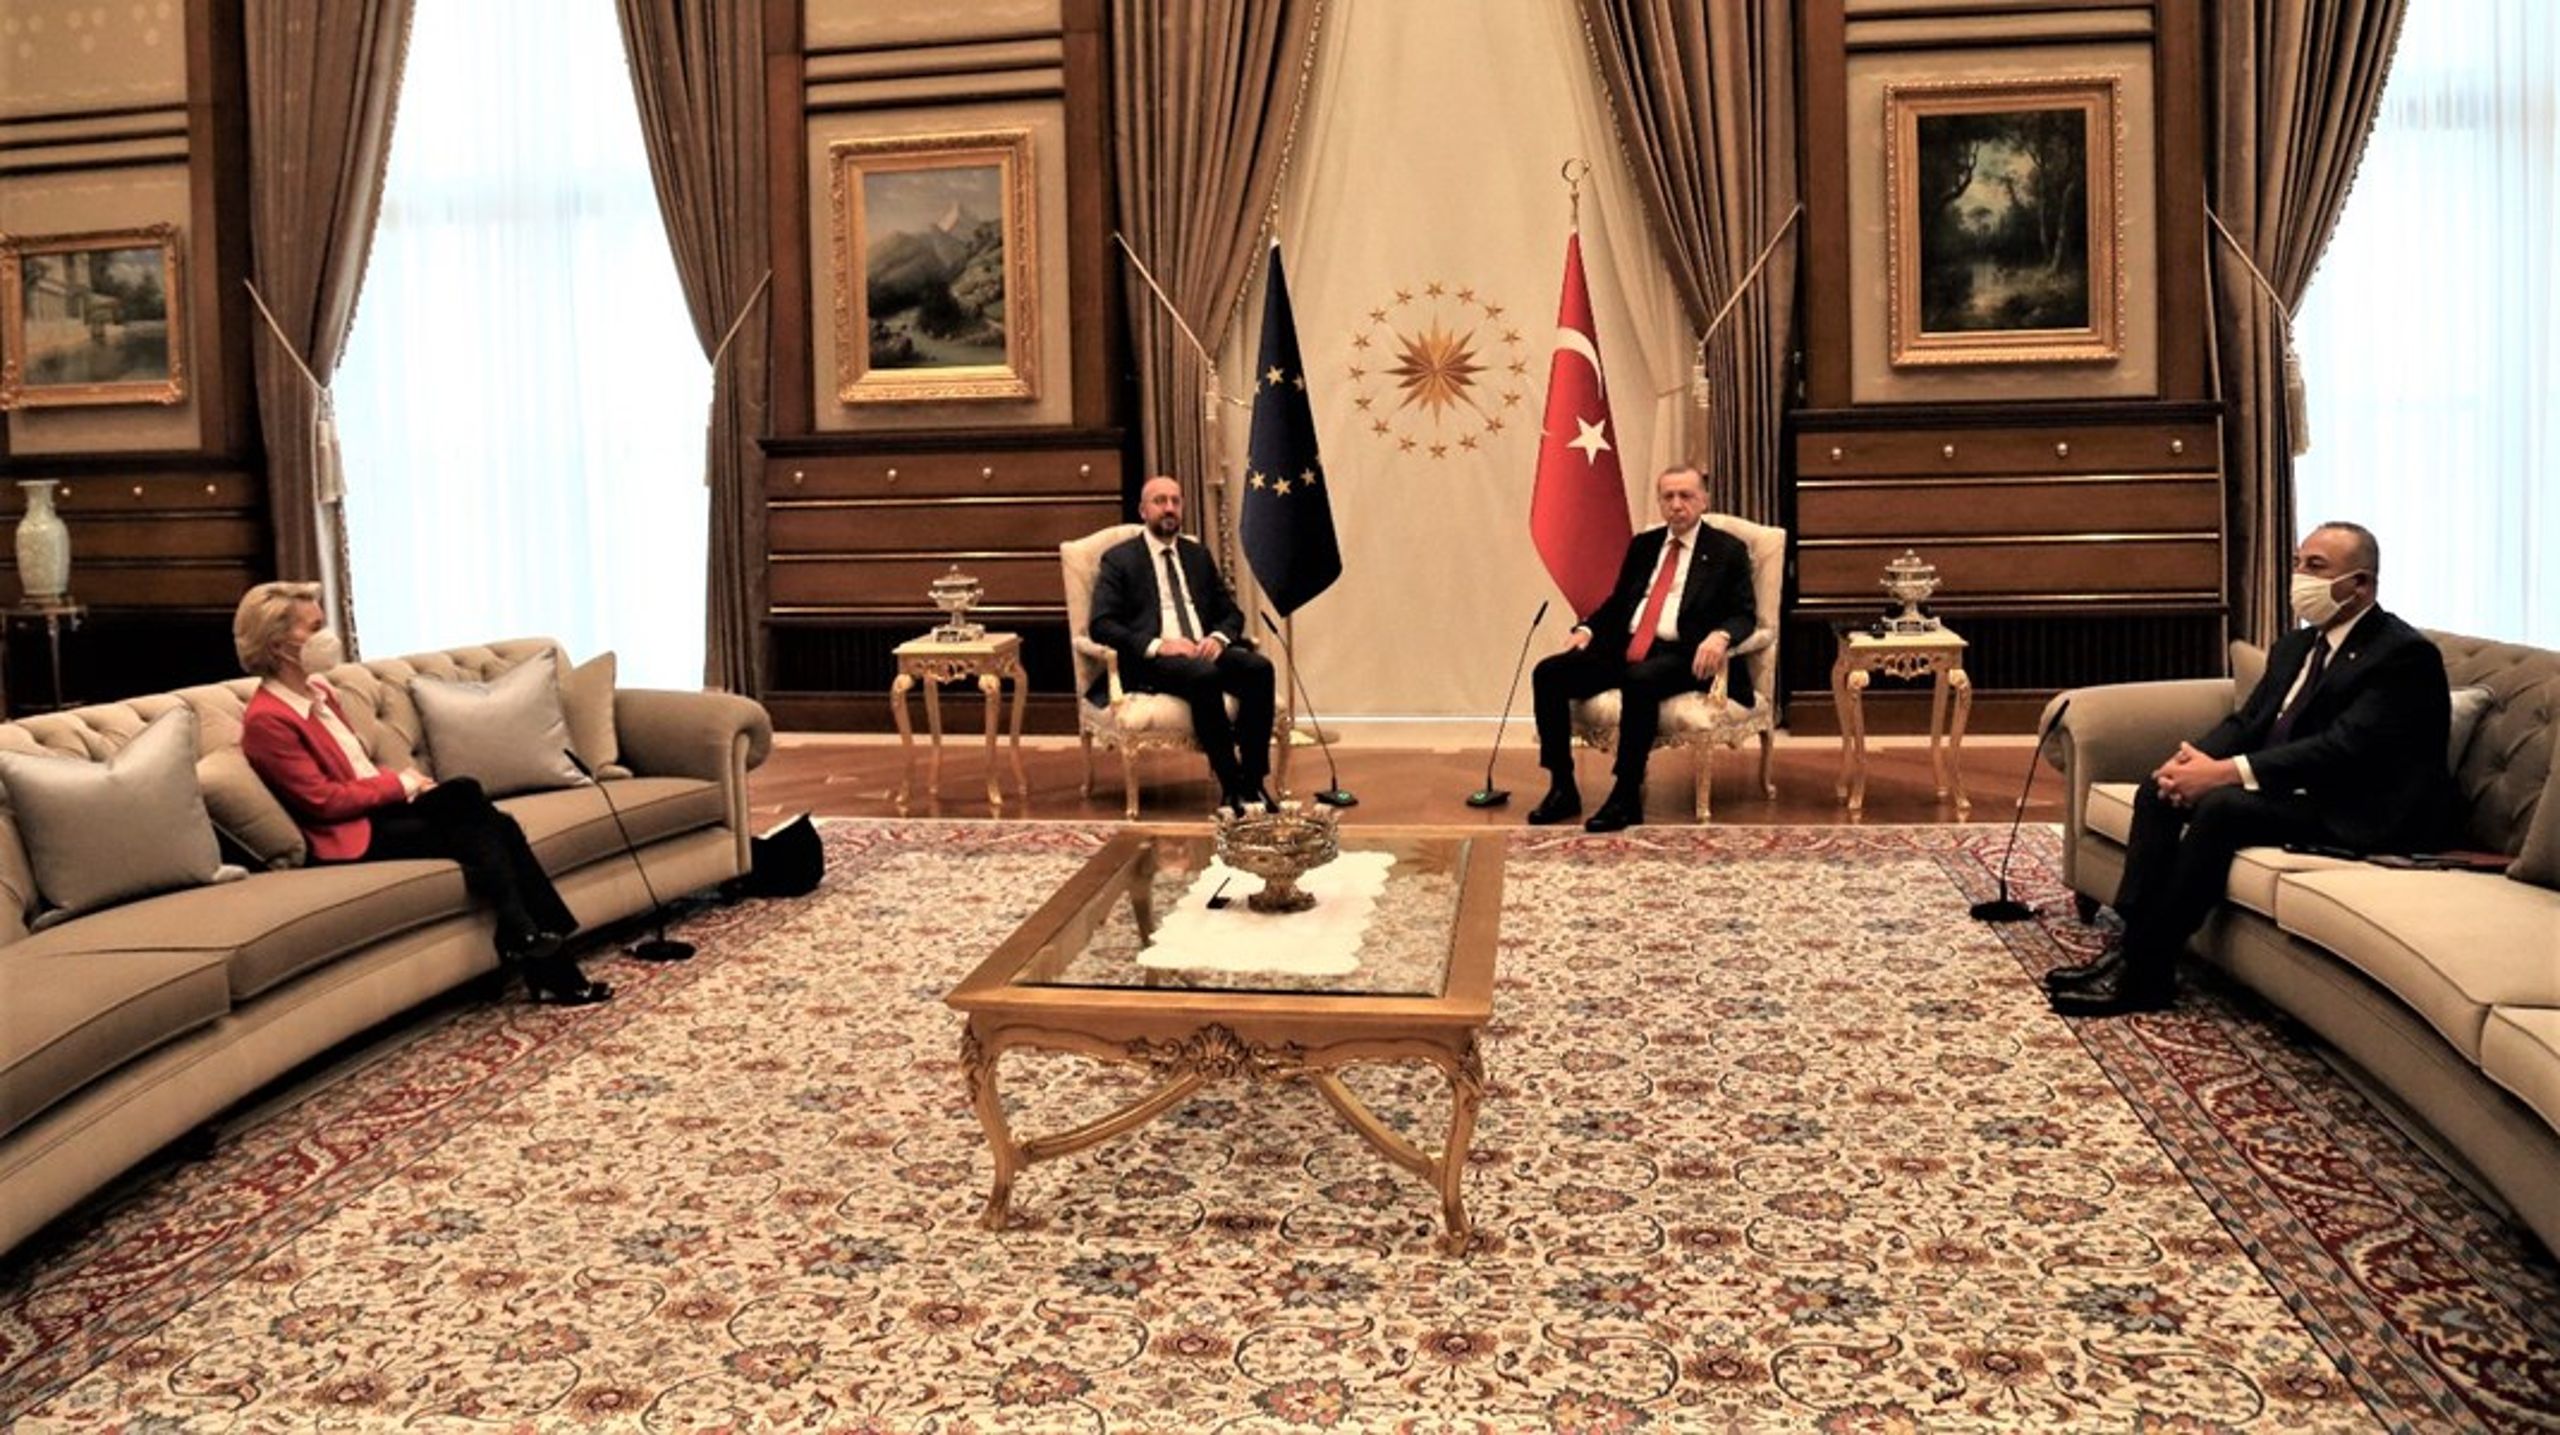 Chefen for EU-Kommissionen, Ursula von der Leyen, var meget utilfreds med sin placering under sidste uges møde med Tyrkiets præsident.